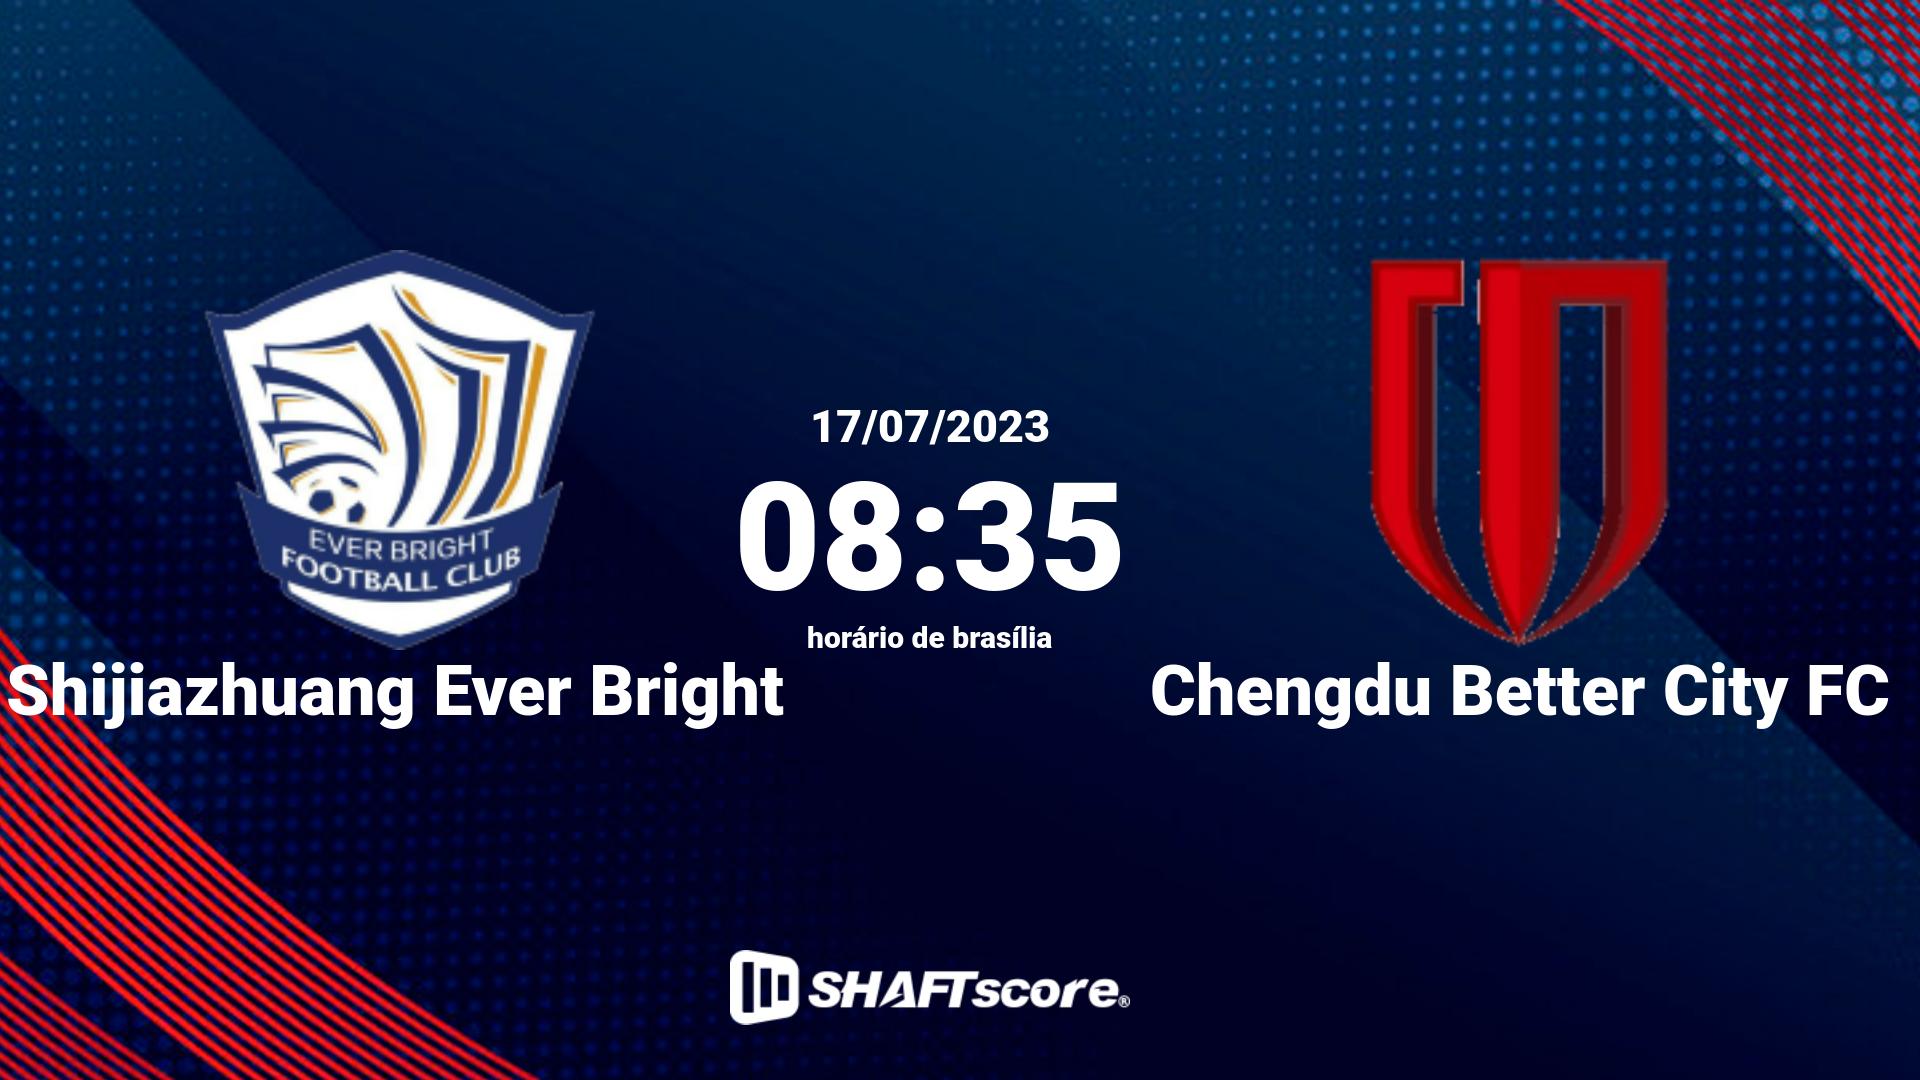 Estatísticas do jogo Shijiazhuang Ever Bright vs Chengdu Better City FC 17.07 08:35